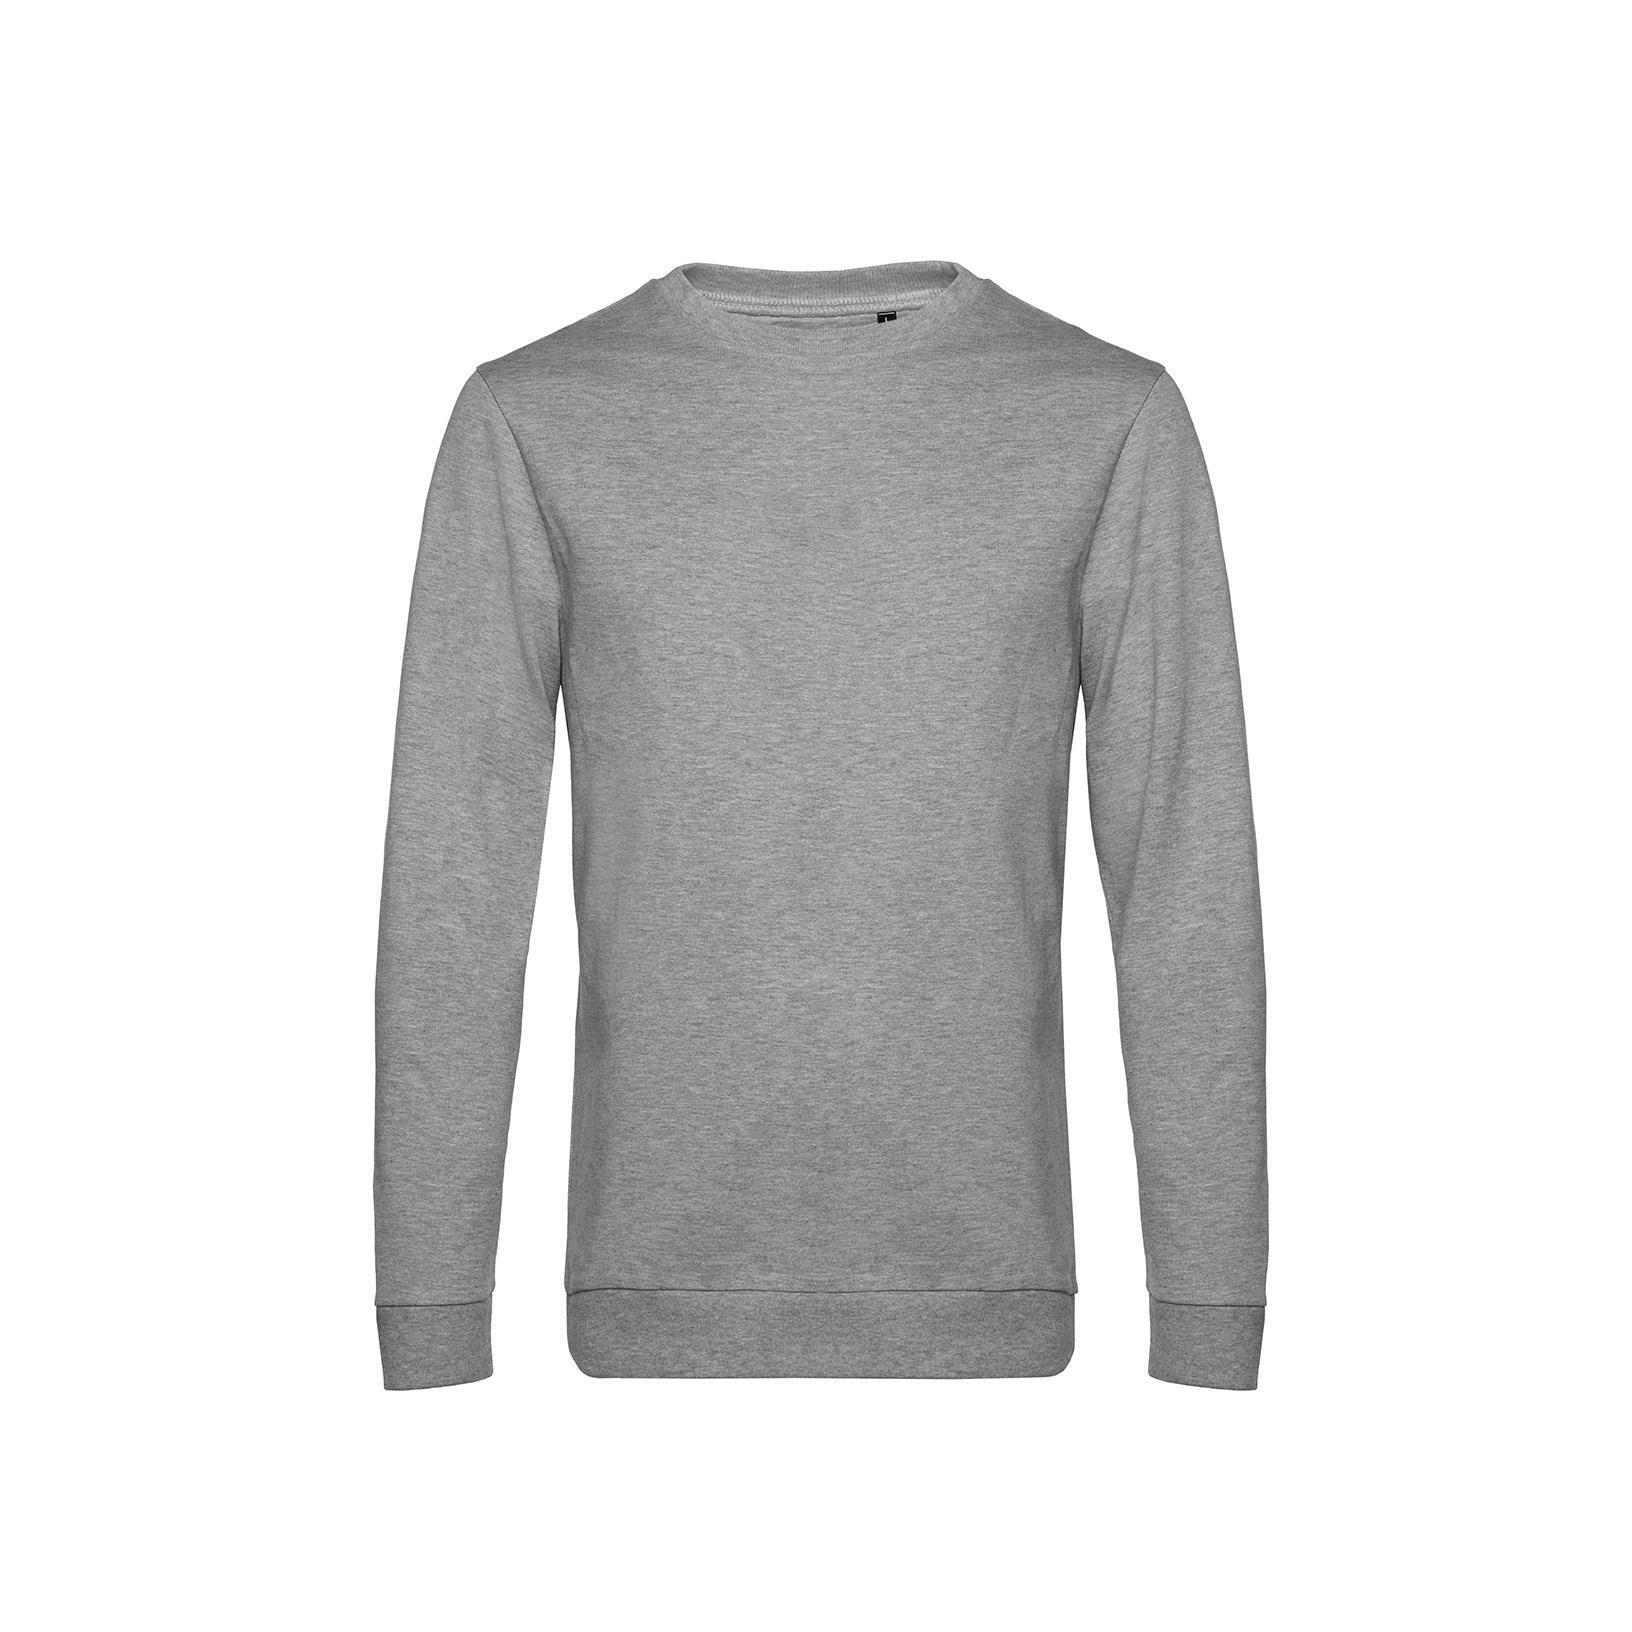 Grijze Trendy Sweater sweatshirt trui unisex heren